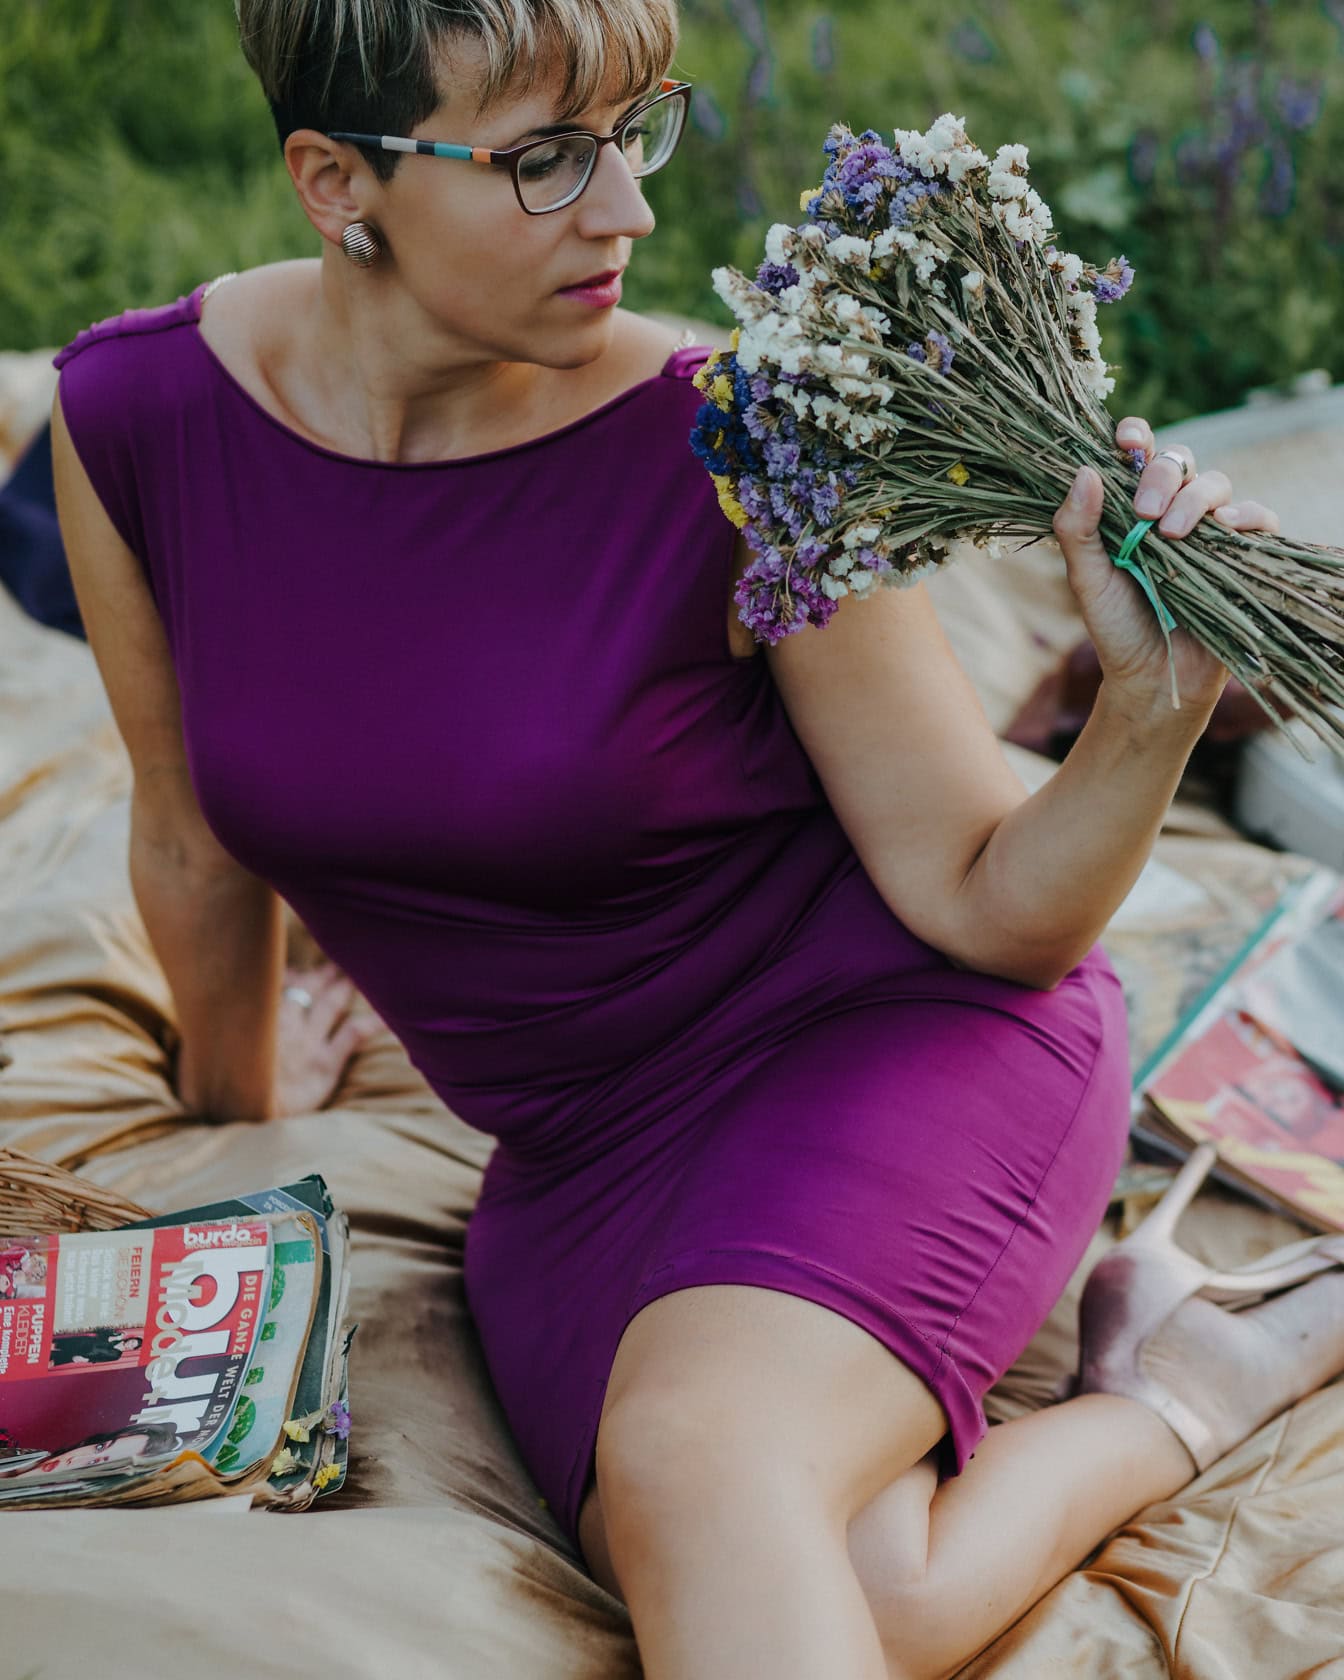 Người phụ nữ đẹp trai trong chiếc váy màu tím cầm bó hoa đồng cỏ khi ngồi trên chăn dã ngoại